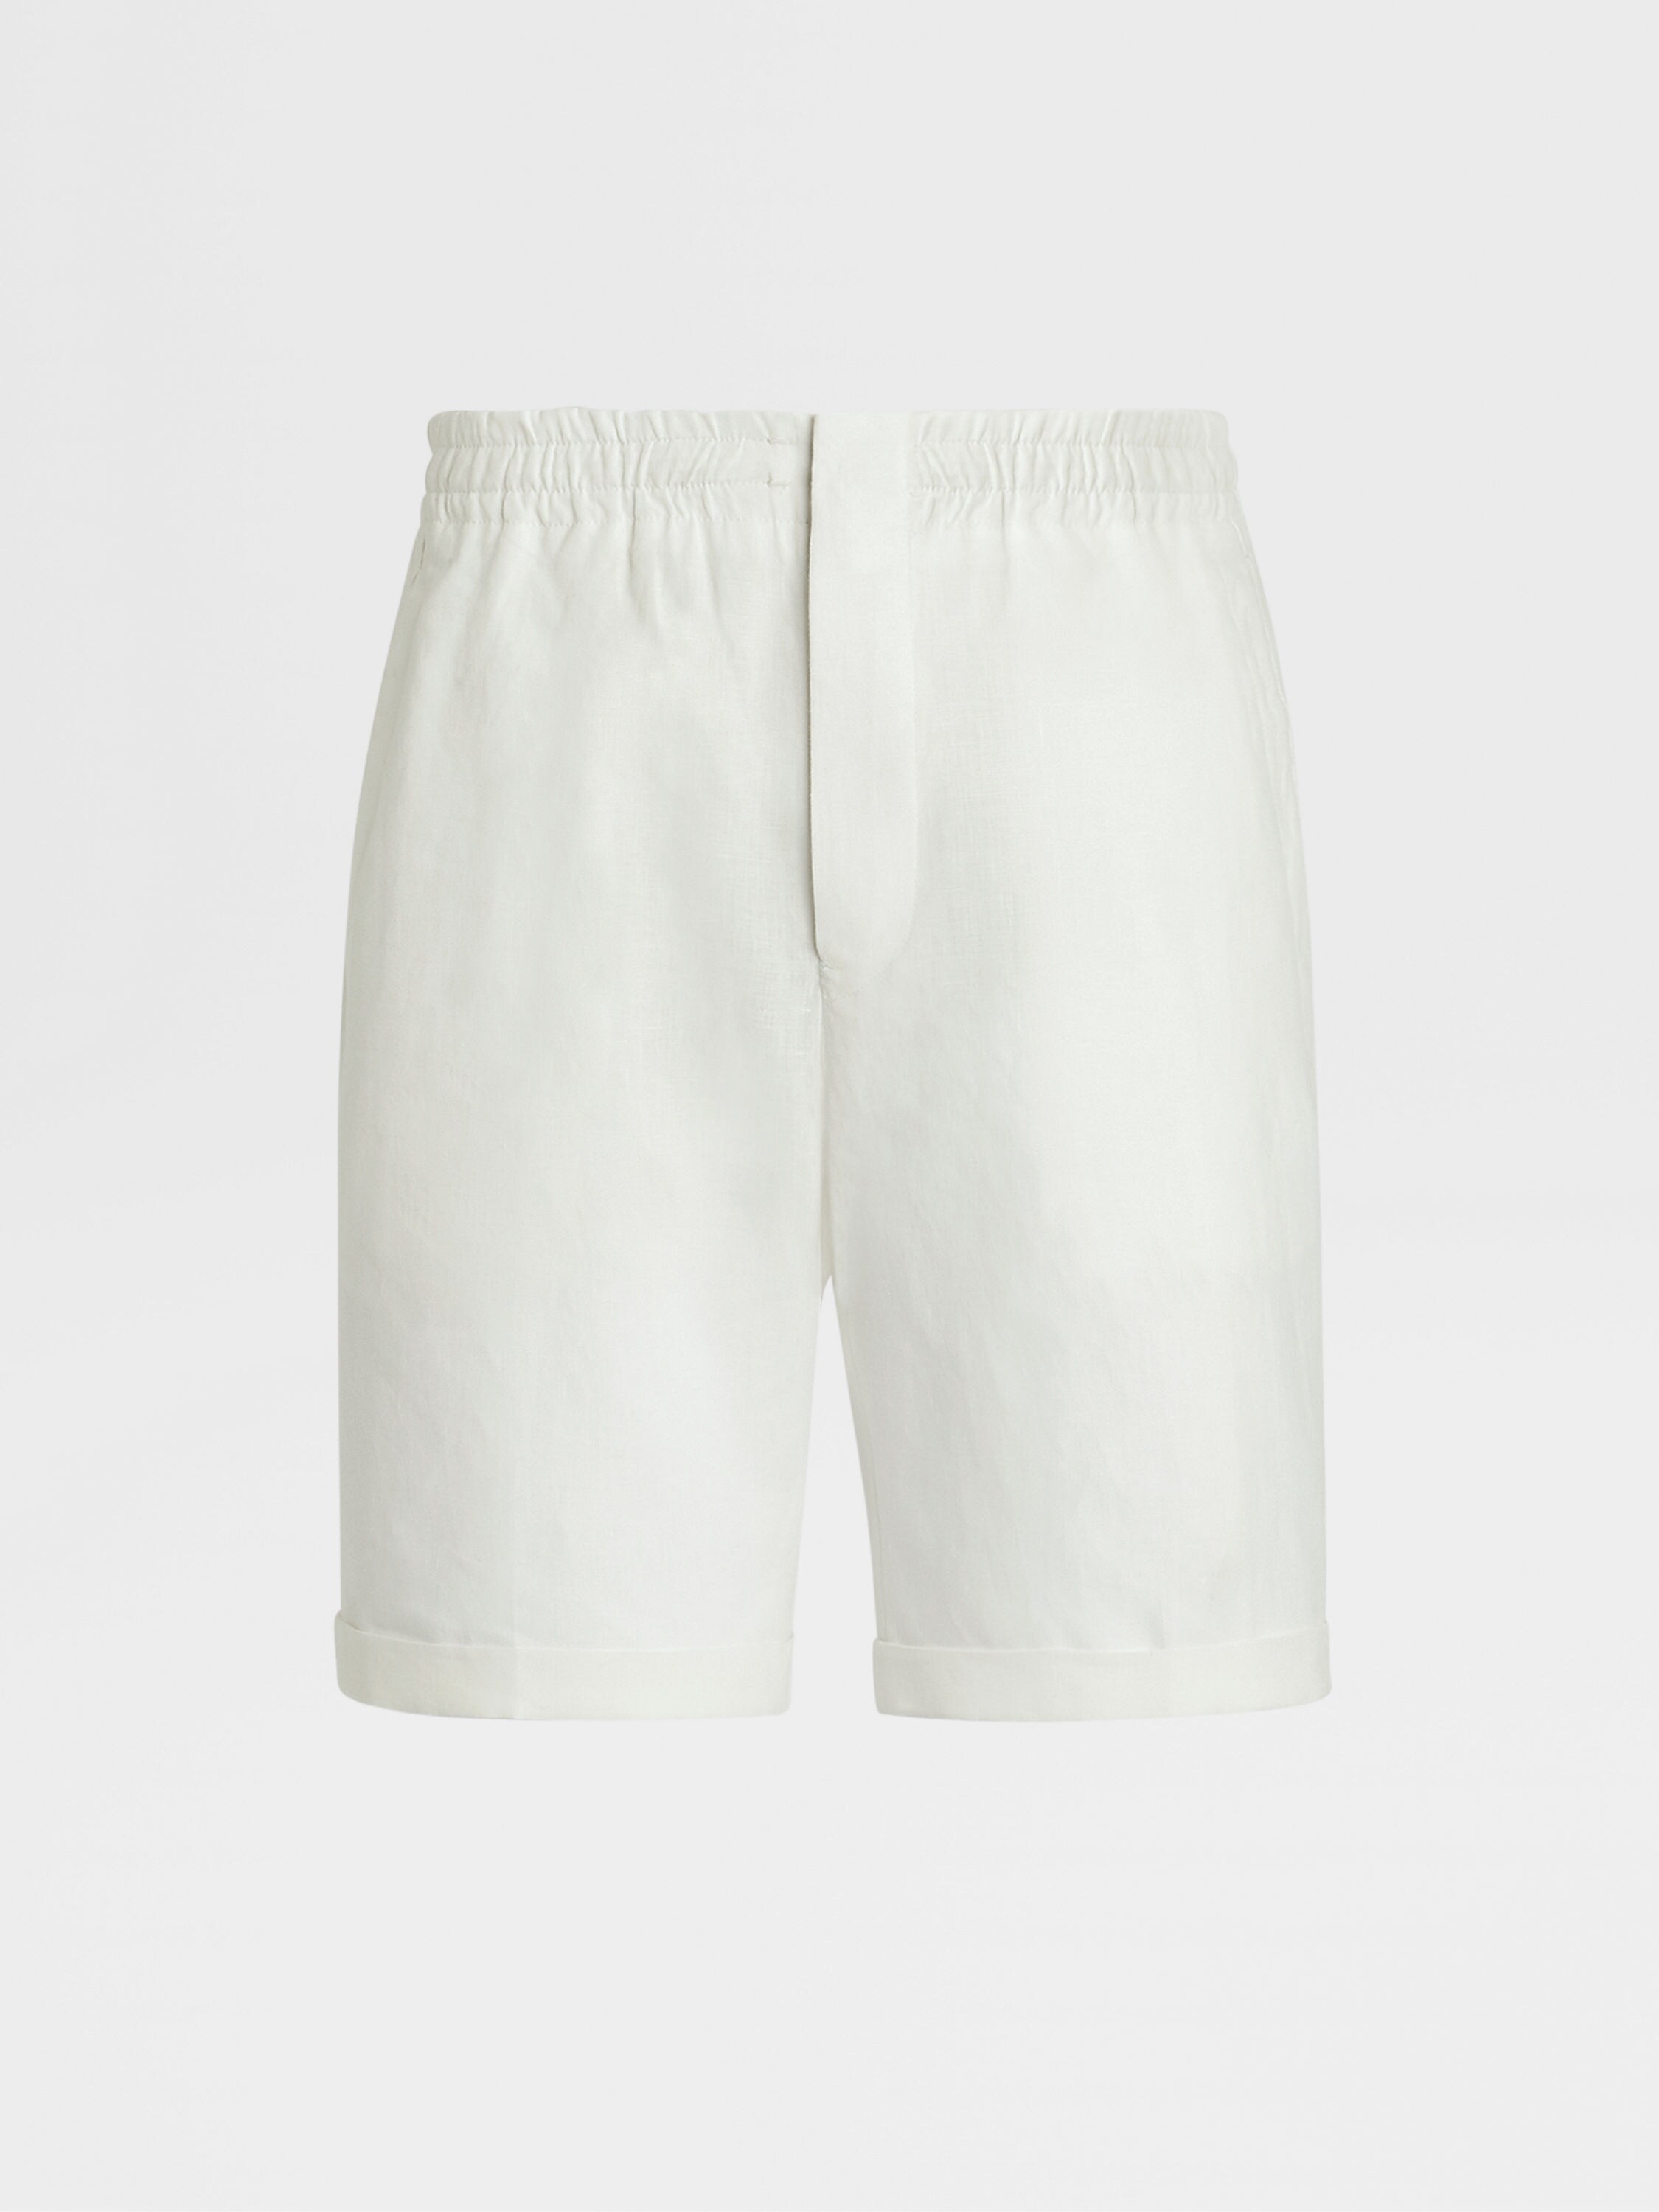 White Linen Shorts FW23 28015305 | Zegna US